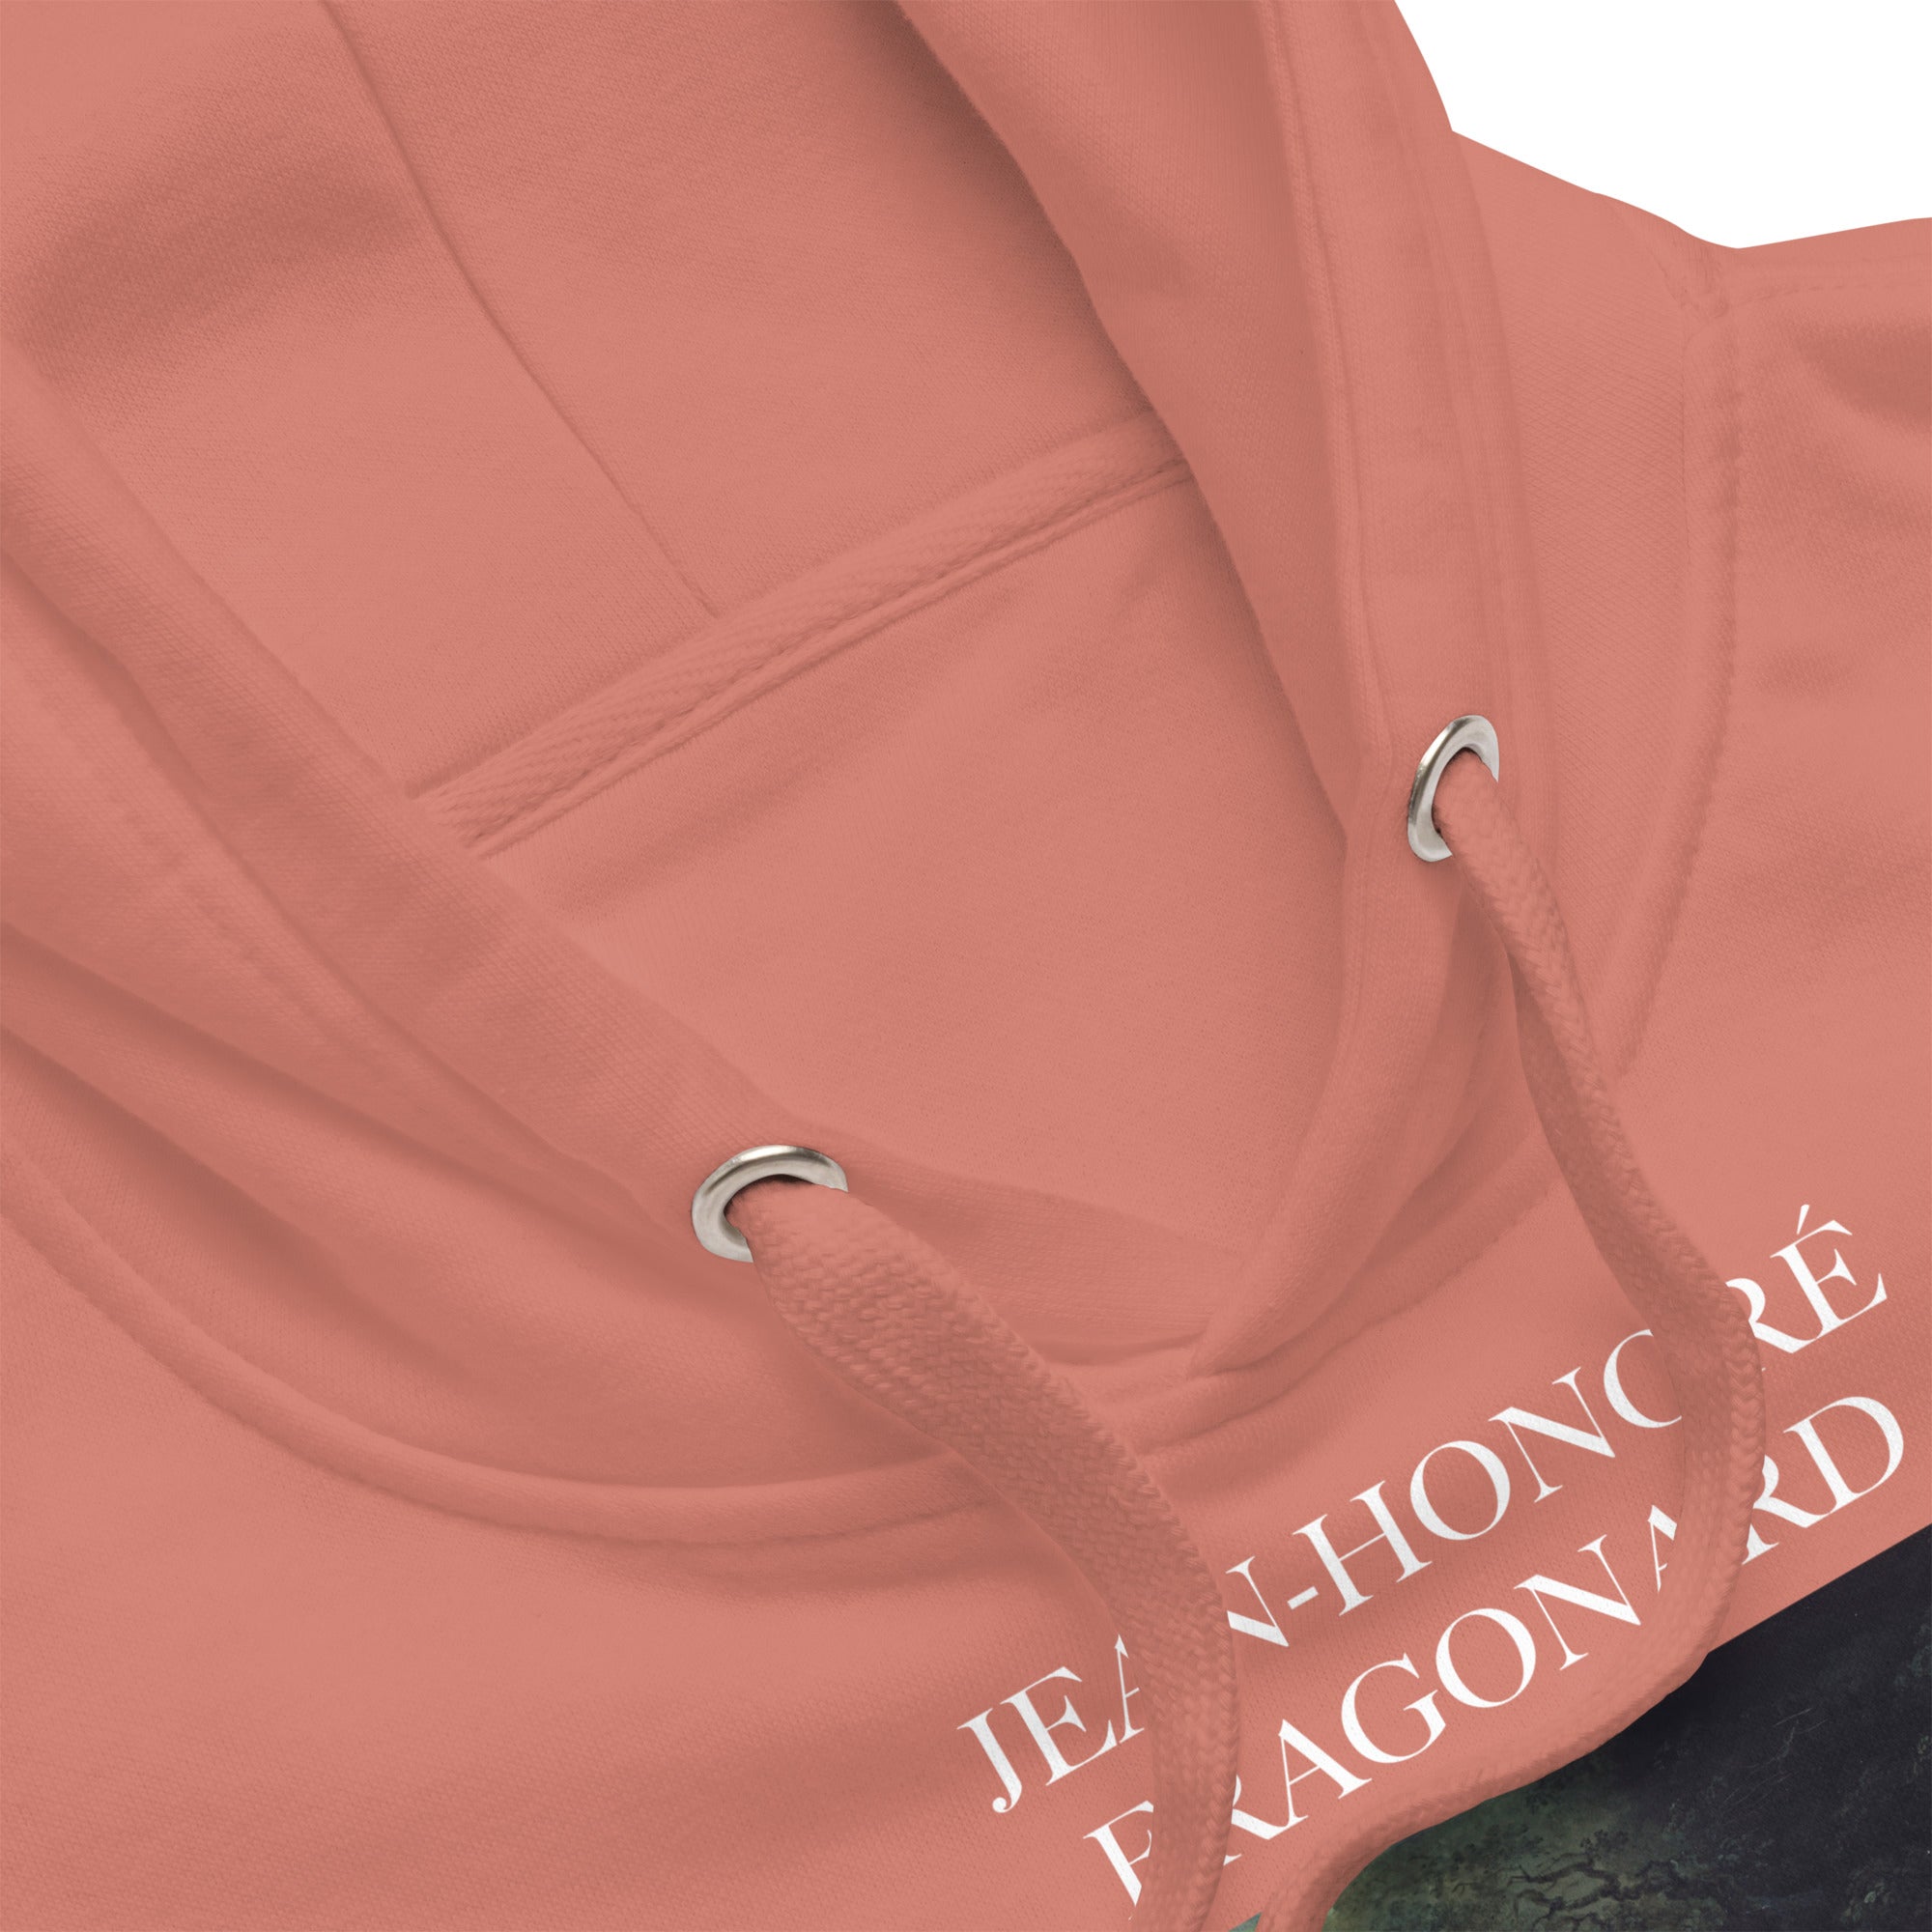 Jean-Honoré Fragonard 'The Swing' Famous Painting Hoodie | Unisex Premium Art Hoodieoodie